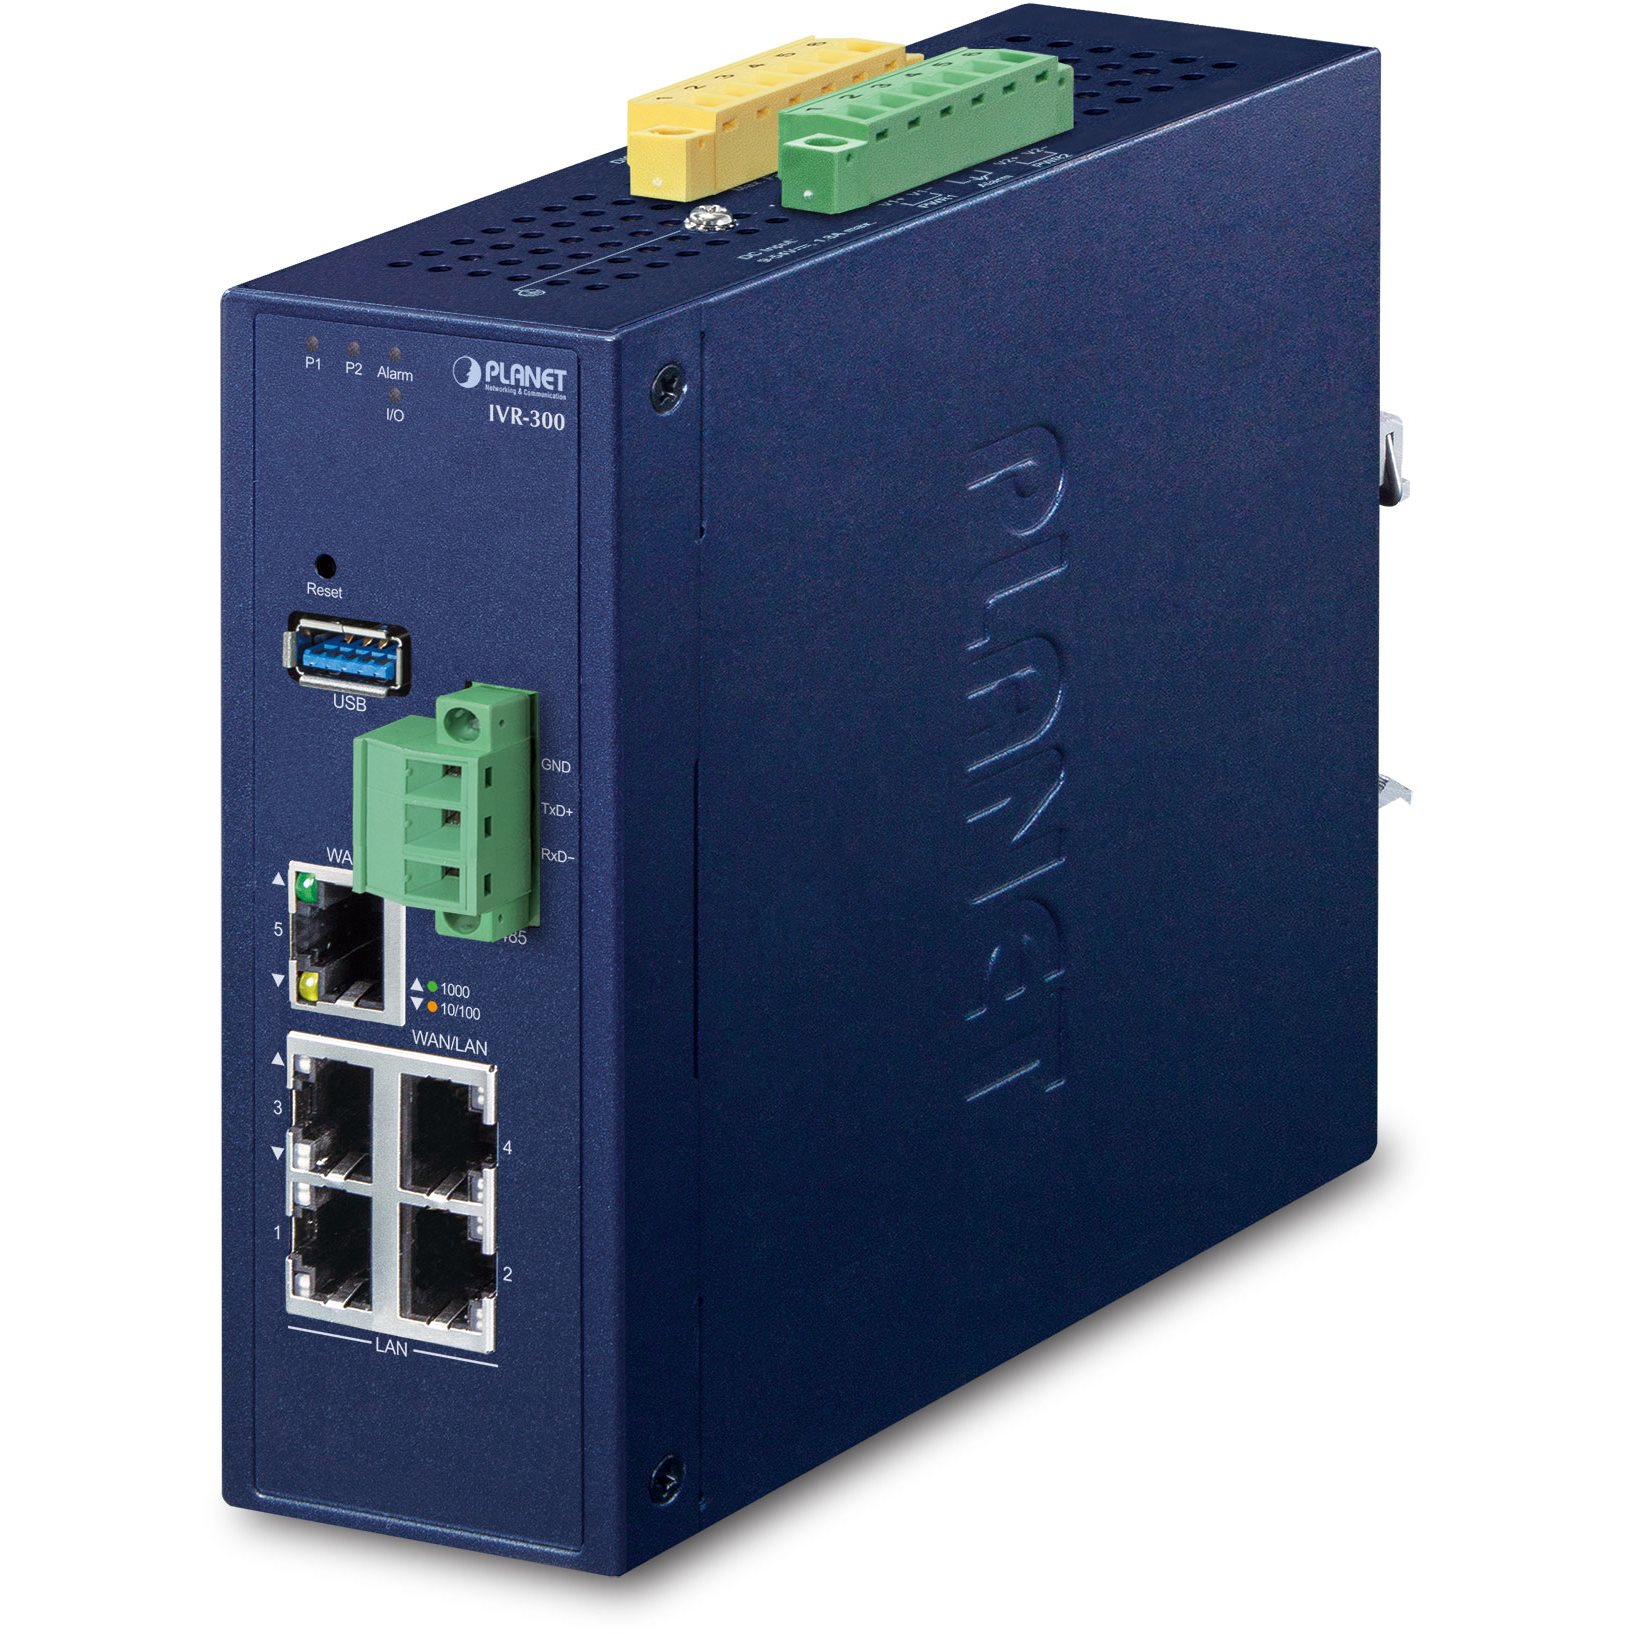   Routeurs  pro   Routeur indus VPN 5 ports Giga -40/75C IVR-300